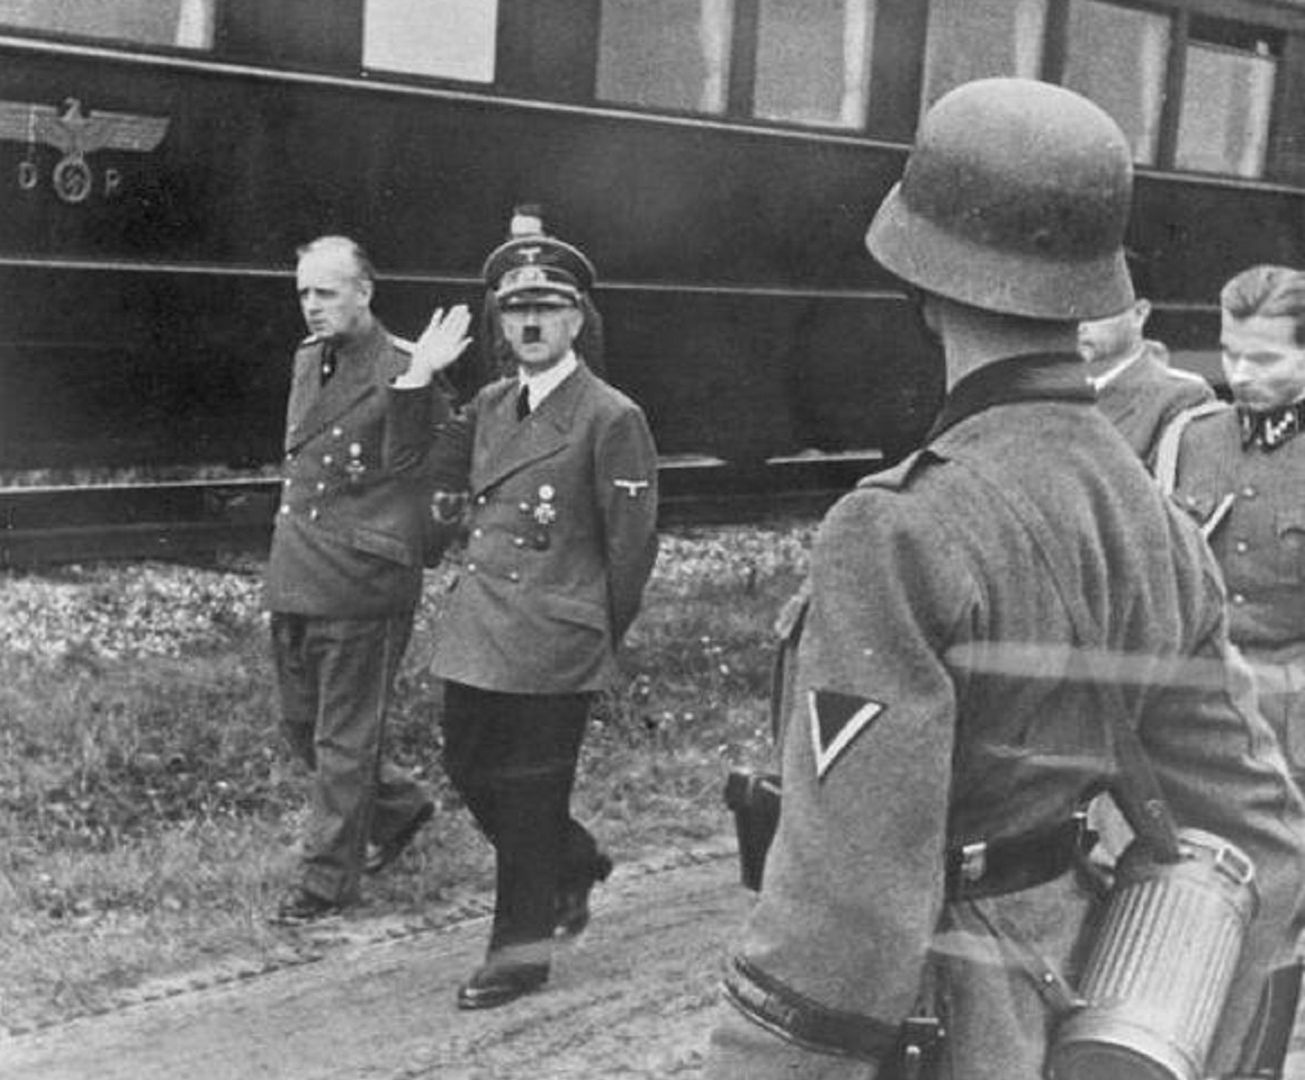 Adolf Hitler na wizycie inspekcyjnej podczas kampanii wrześniowej.